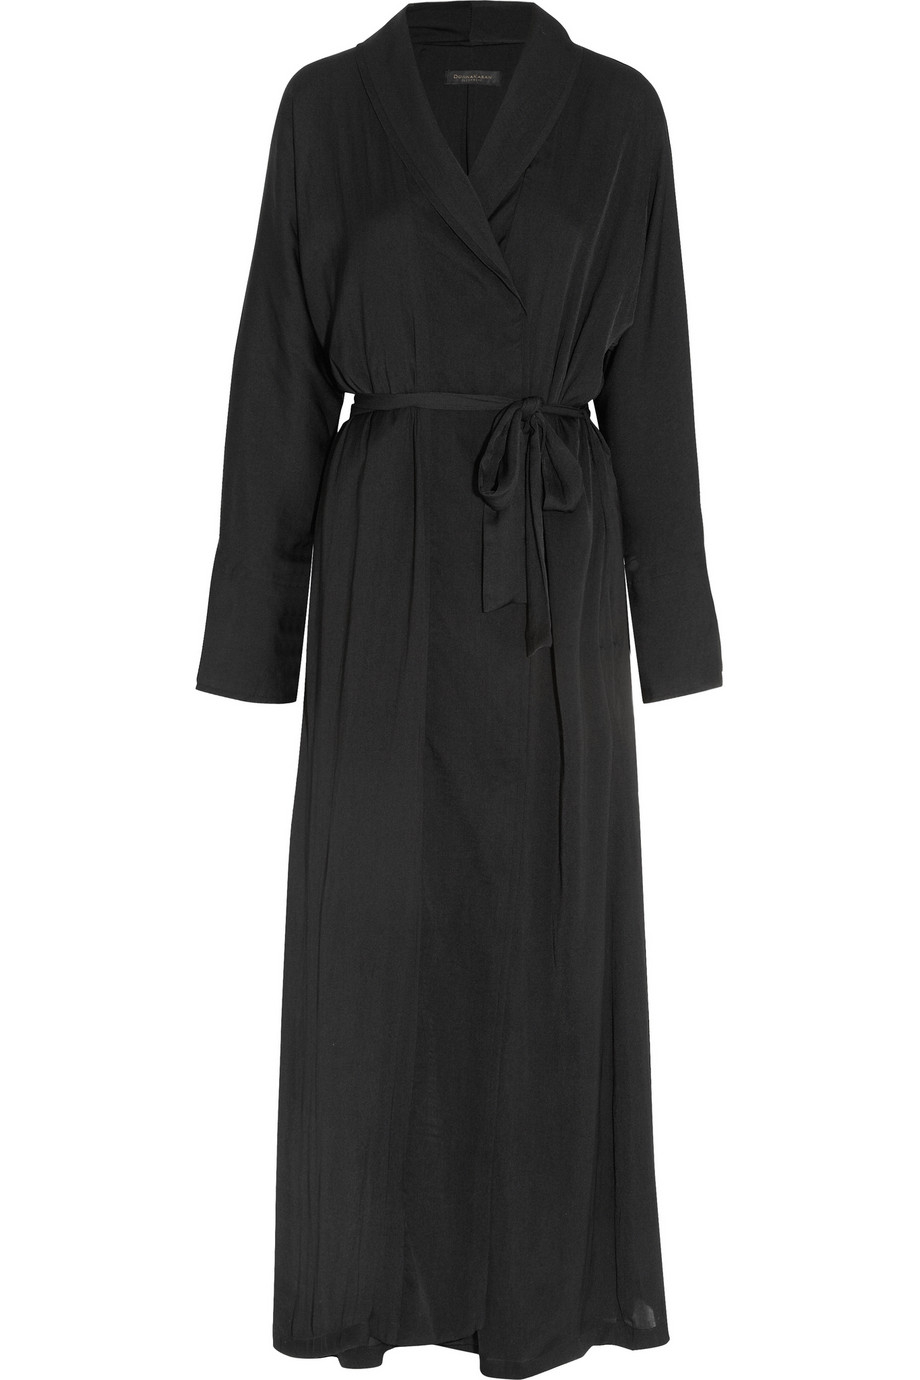 Donna Karan Sleepwear Satincrepe Robe in Black | Lyst